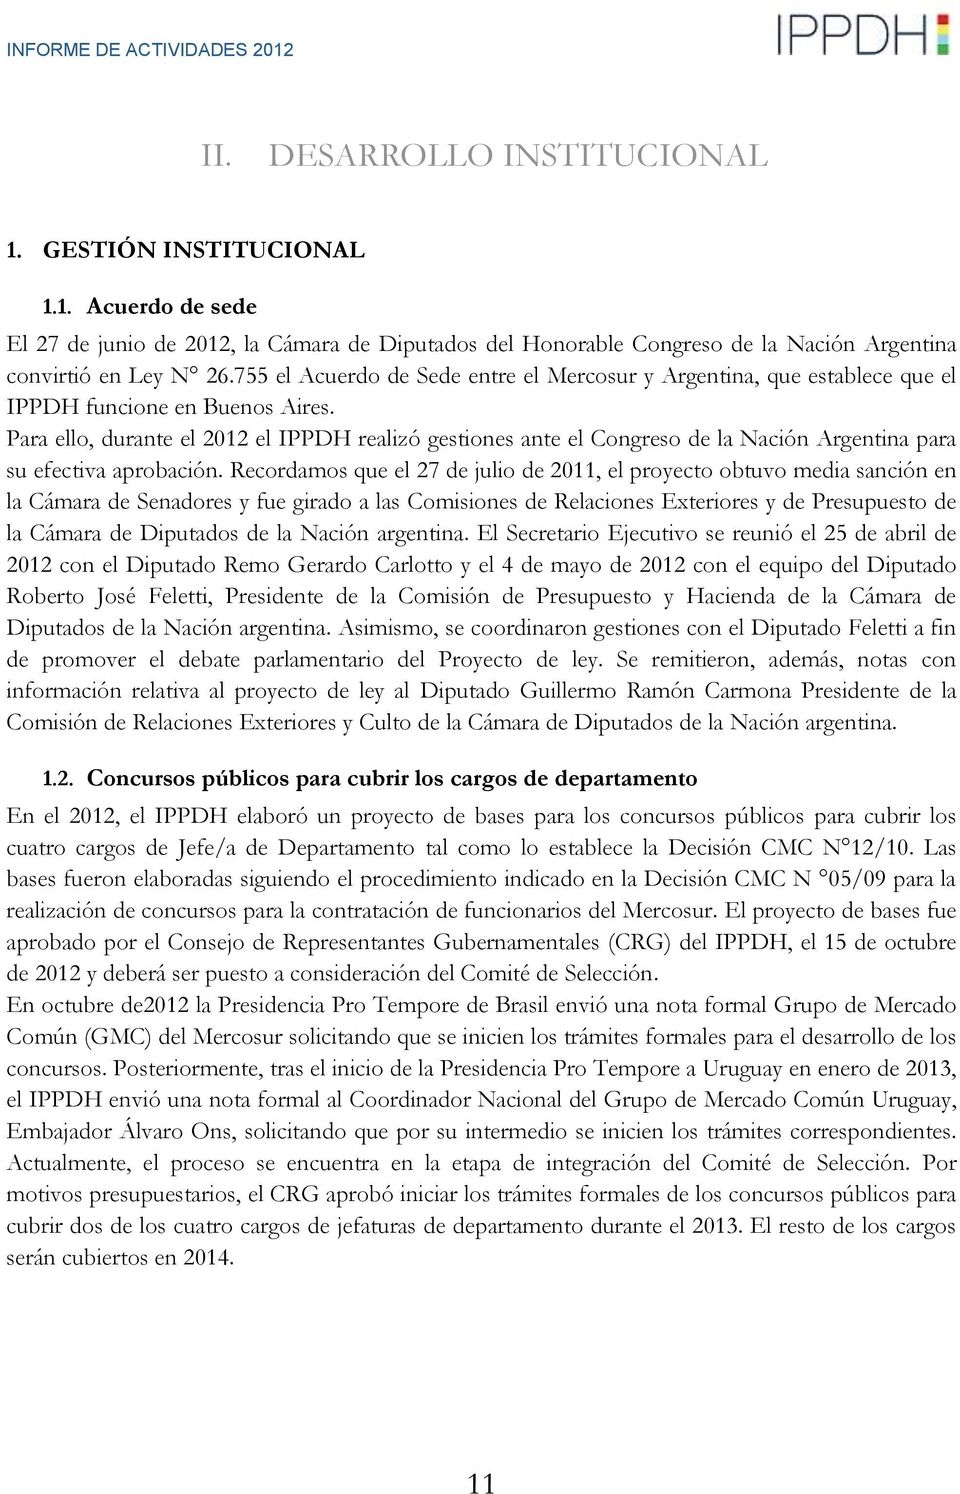 Para ello, durante el 2012 el IPPDH realizó gestiones ante el Congreso de la Nación Argentina para su efectiva aprobación.